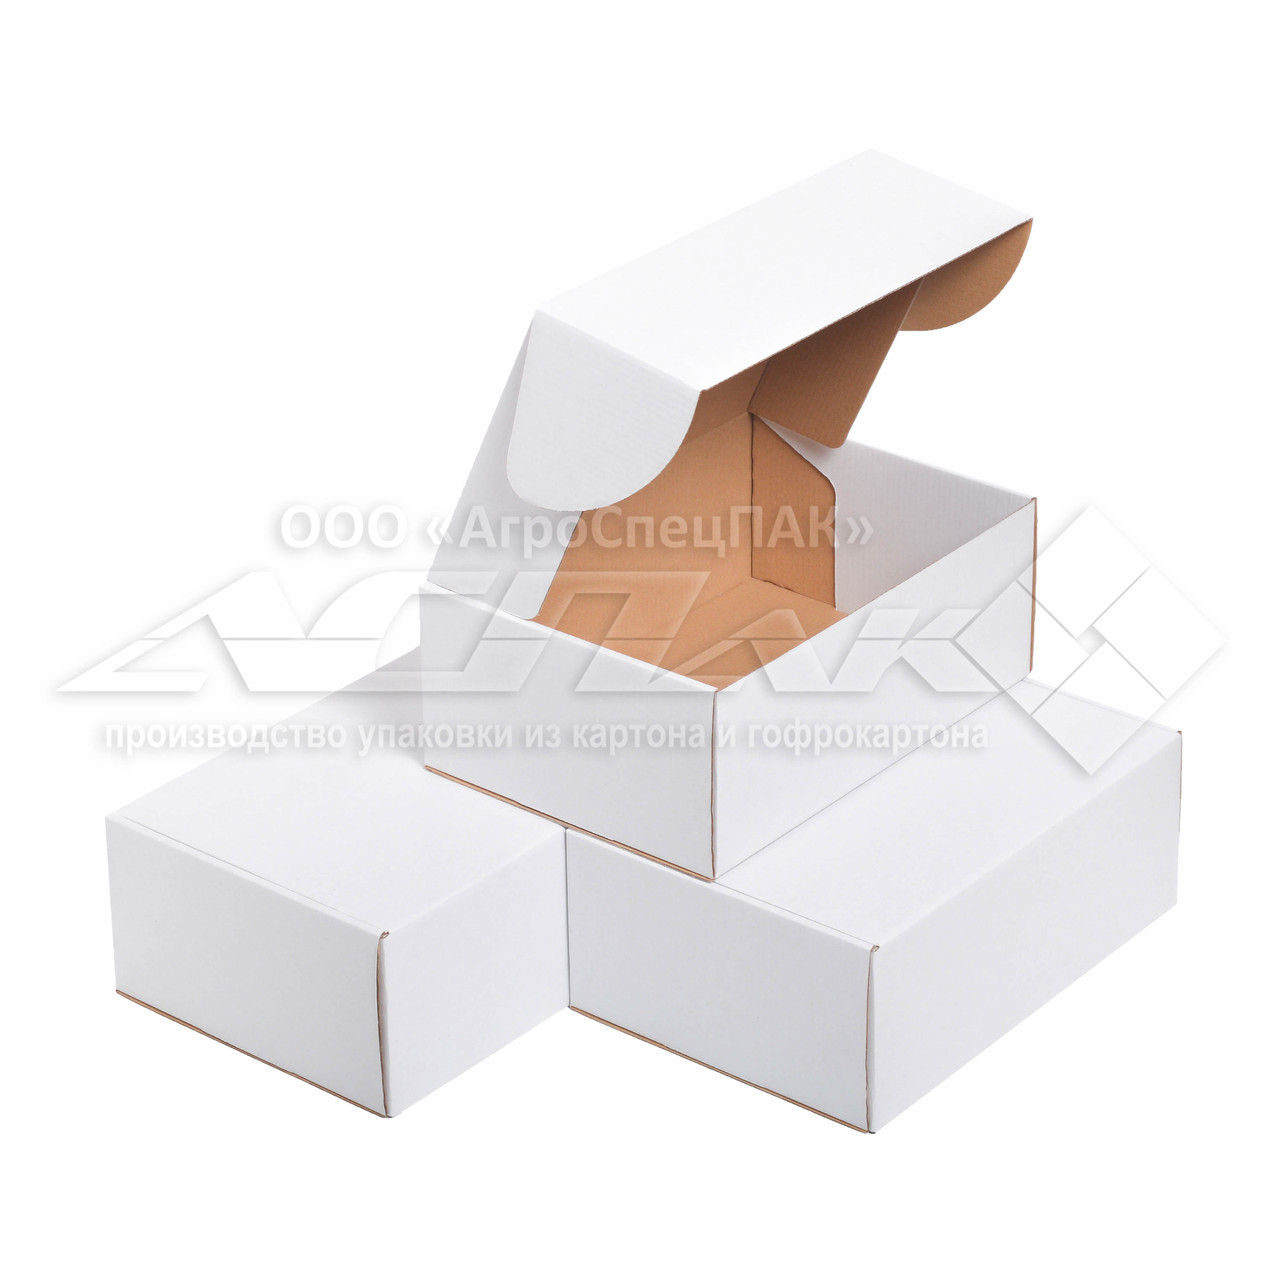 Картонна коробка 310х220х120 біла. Коробка формату А4.